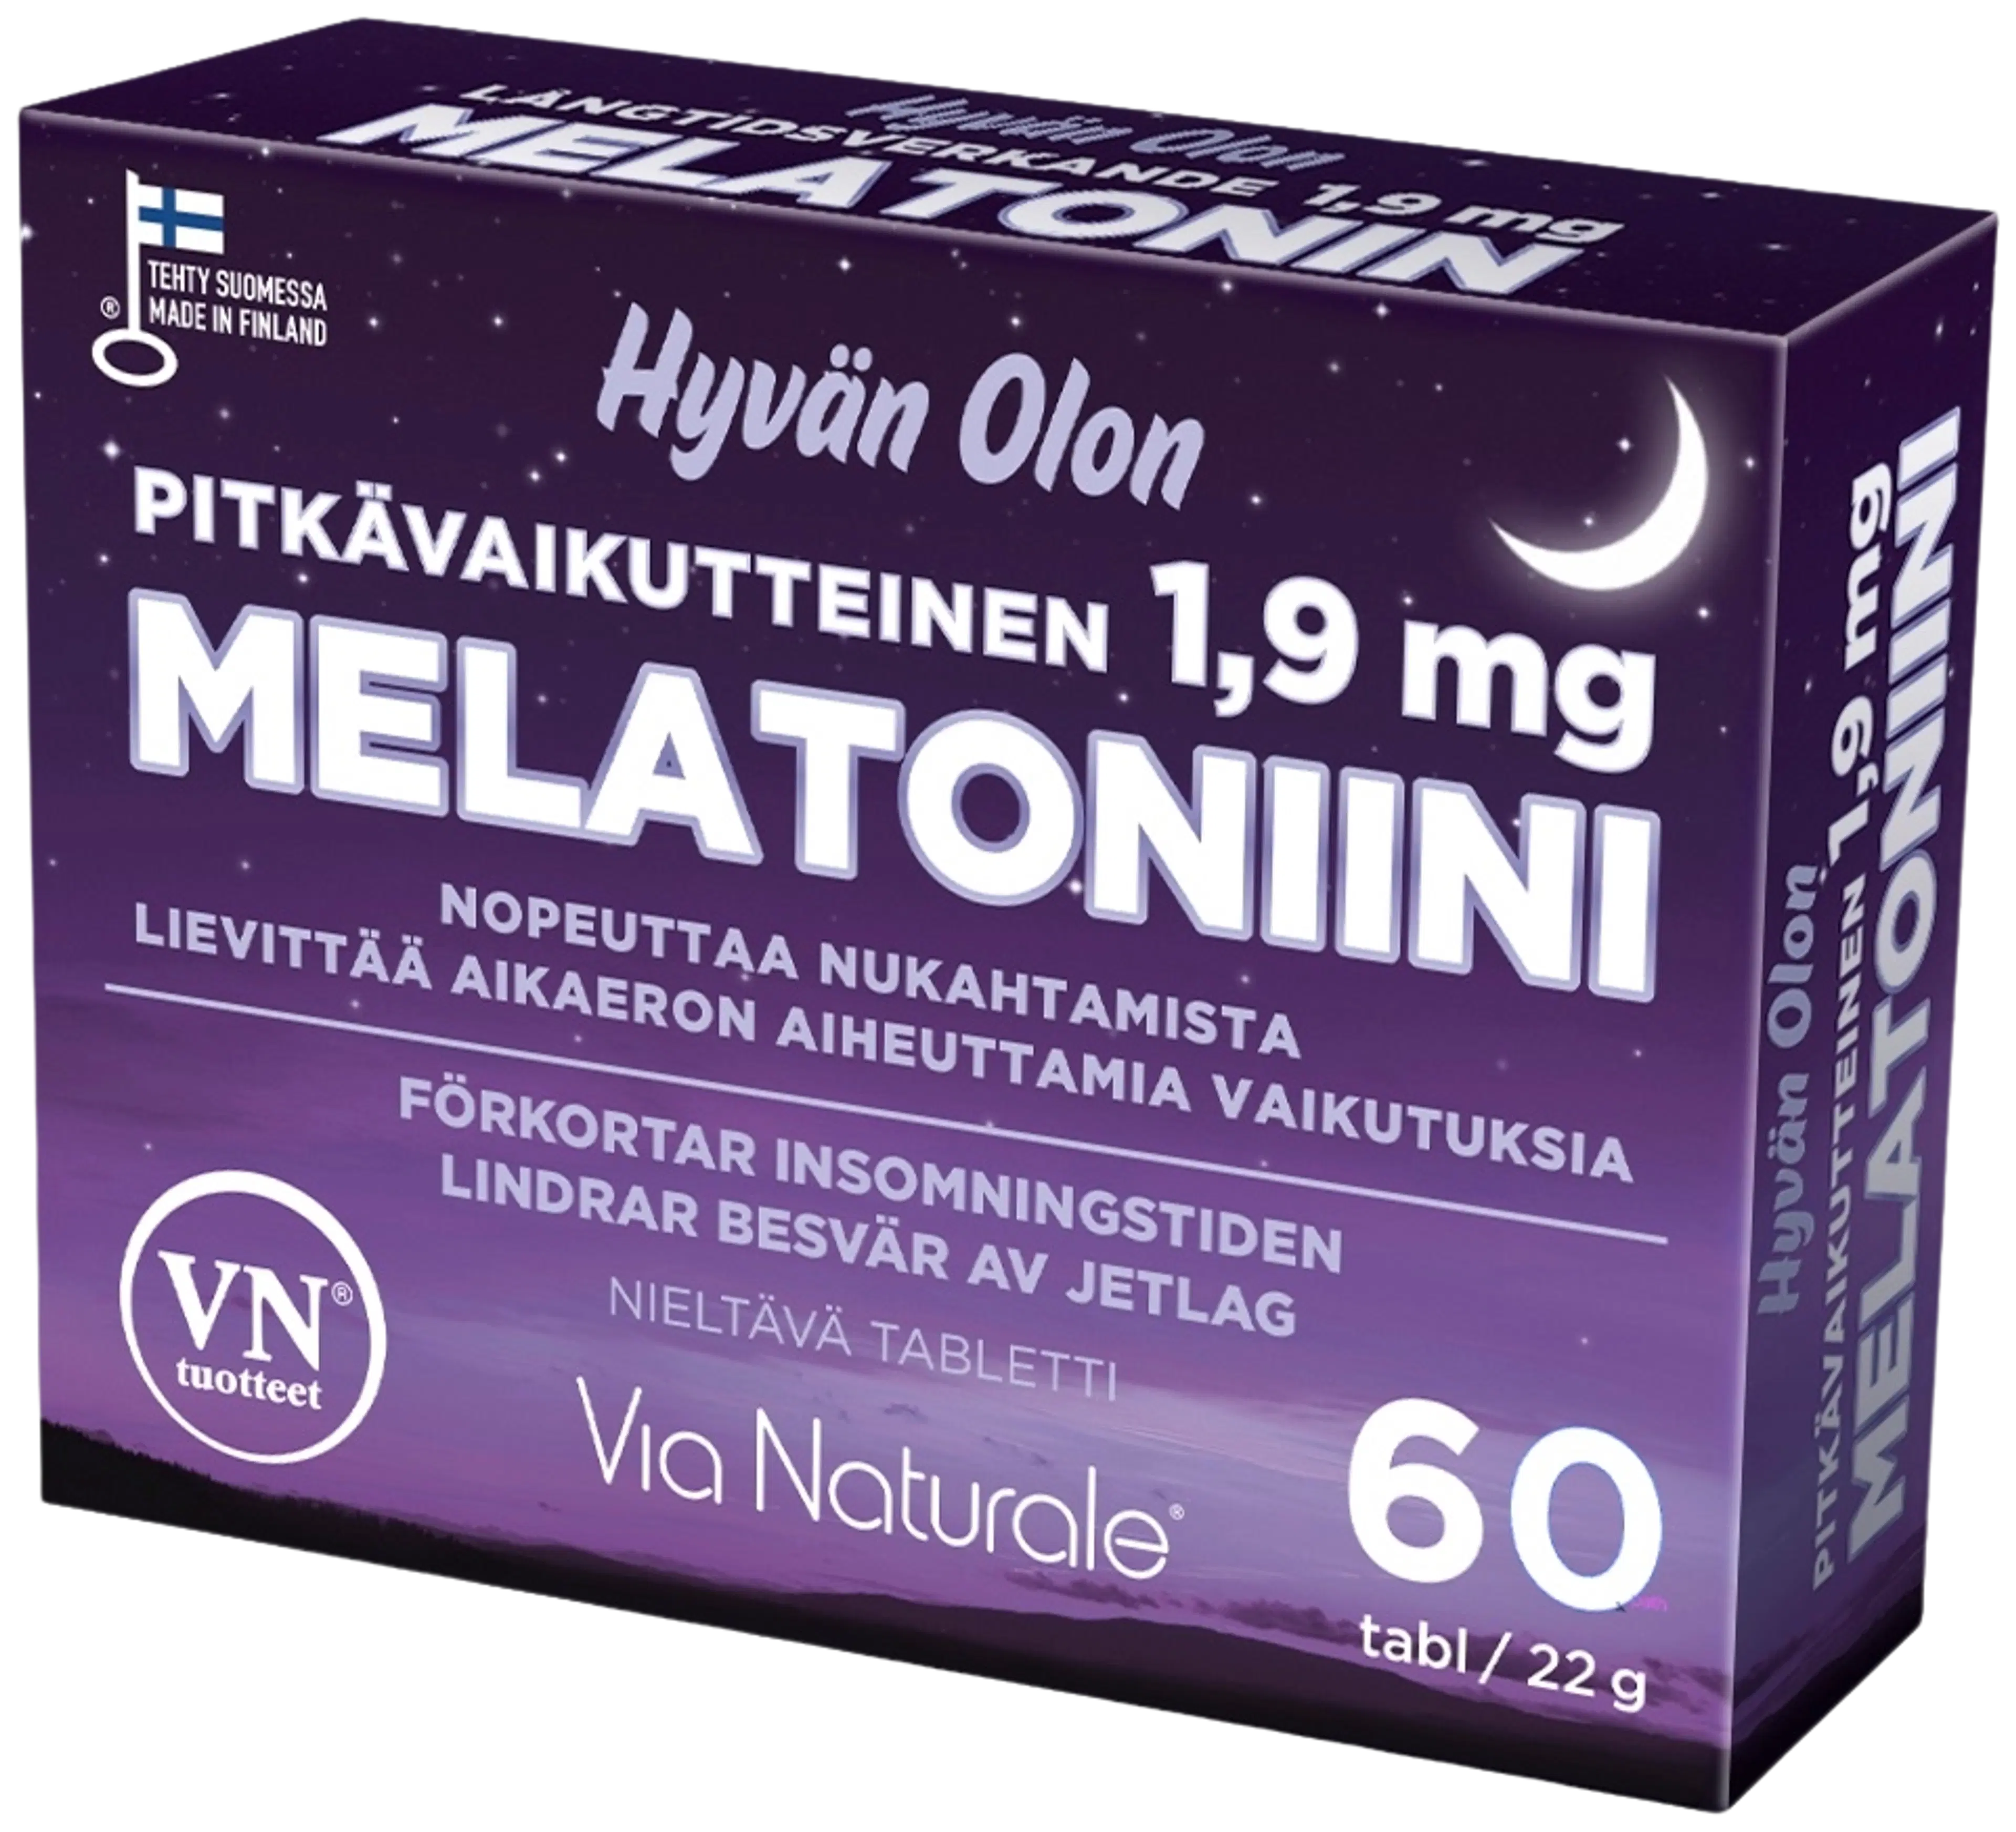 Hyvän Olon Pitkävaikutteinen Melatoniini 1,9 mg 60 tabl Via Naturale